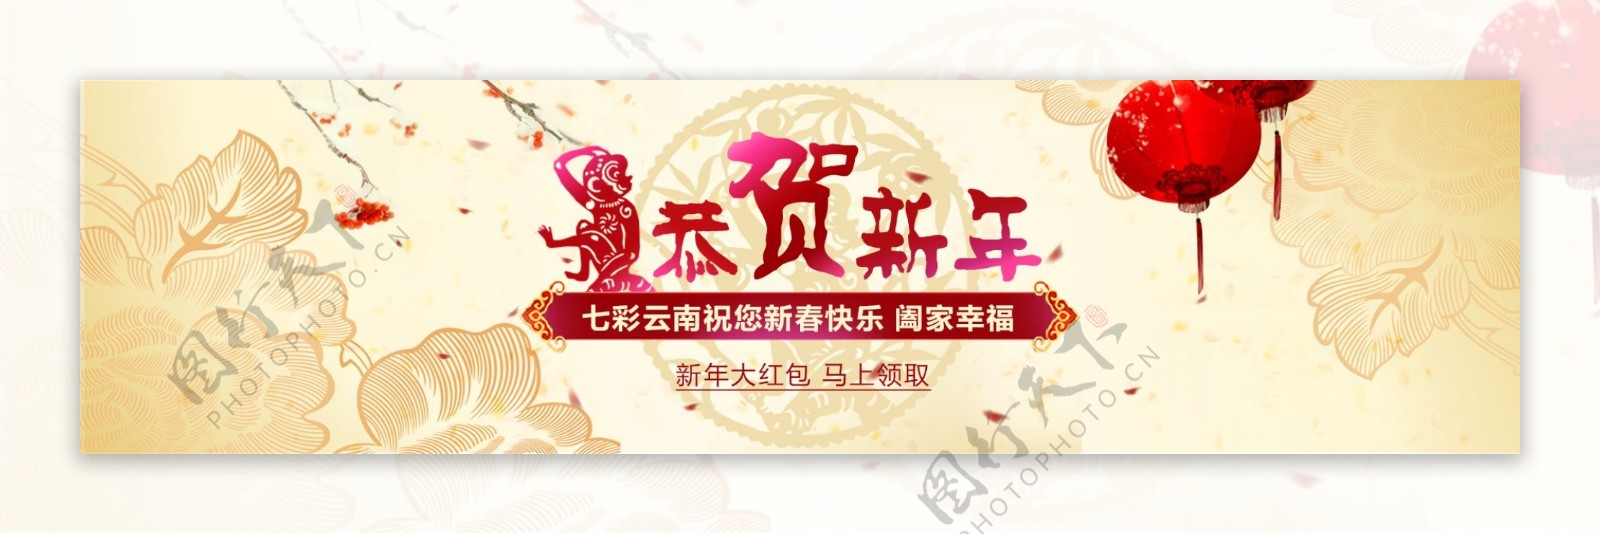 恭贺新年猴年春节海报素材